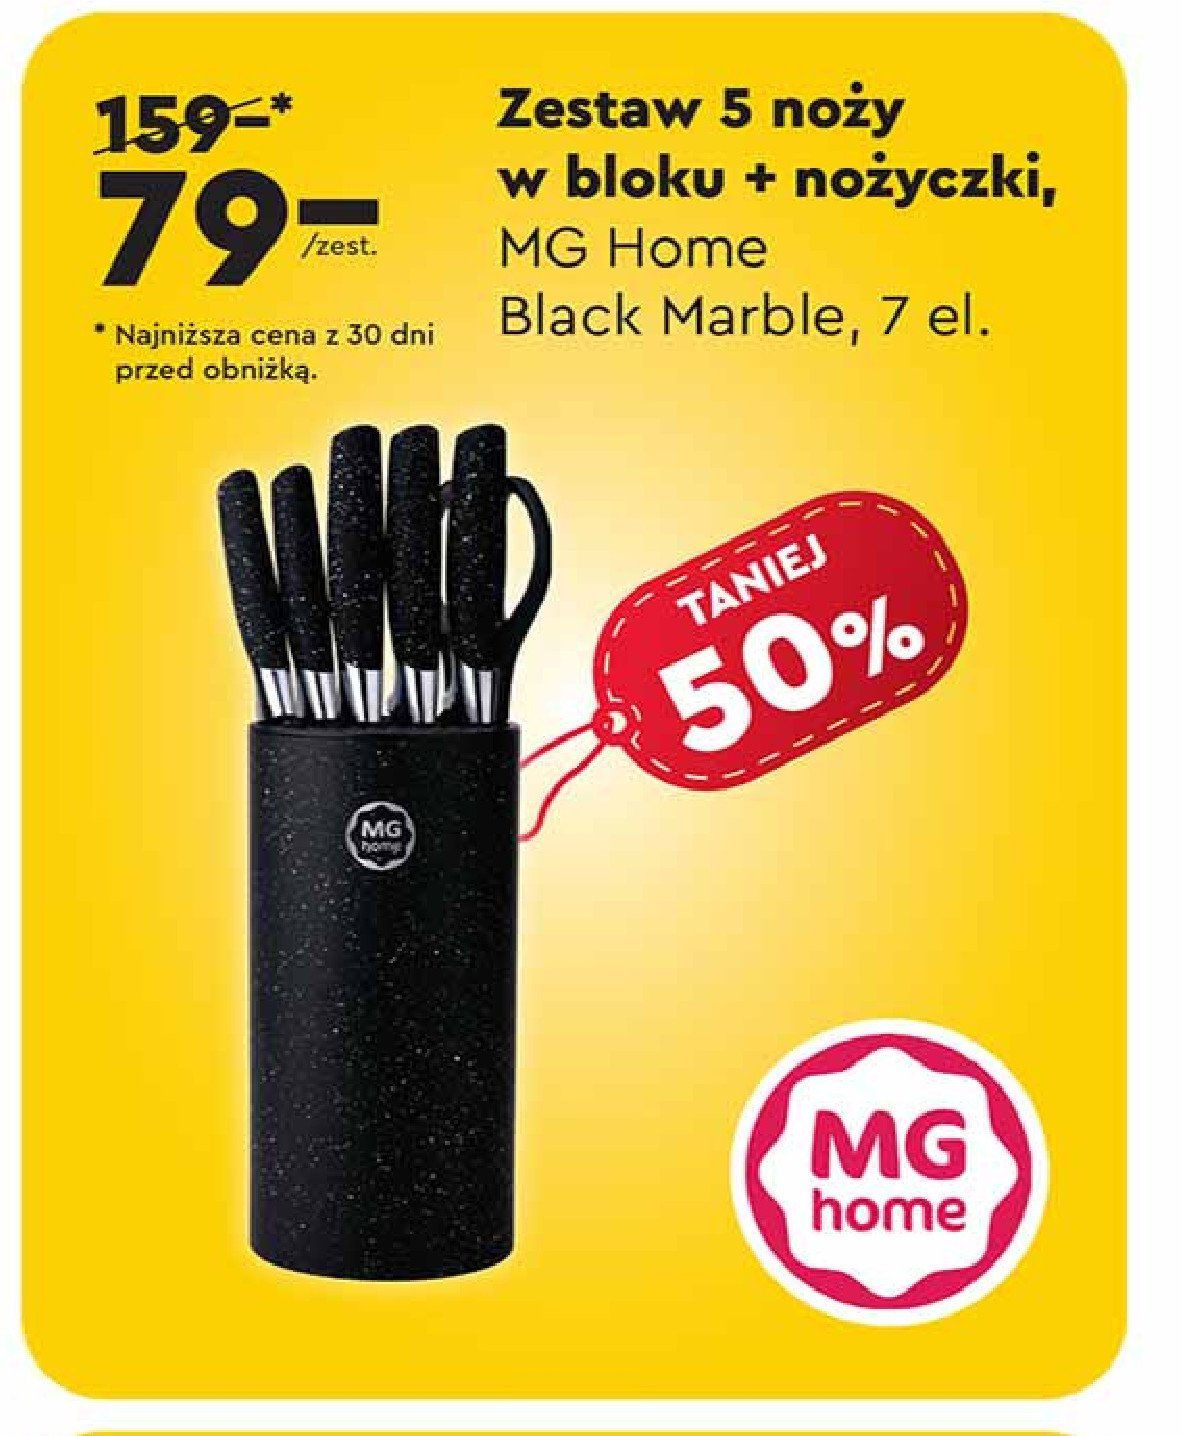 Zestaw noży kuchennych z nożyczkami black marble Mg home promocja